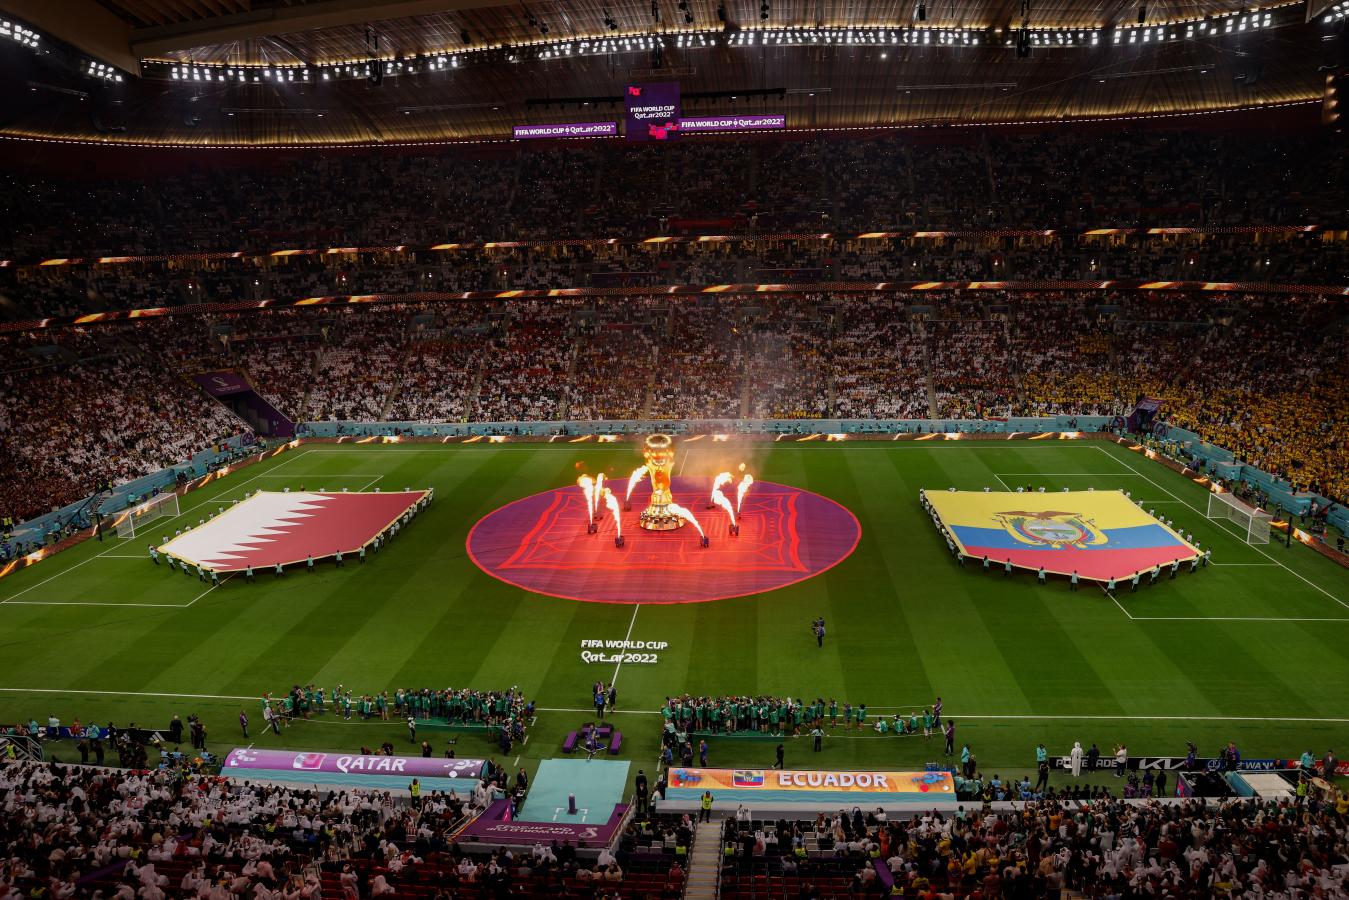 Imagen Qatar - Ecuador, el partido inaugural del Mundial 2022 (Odd ANDERSEN / AFP)